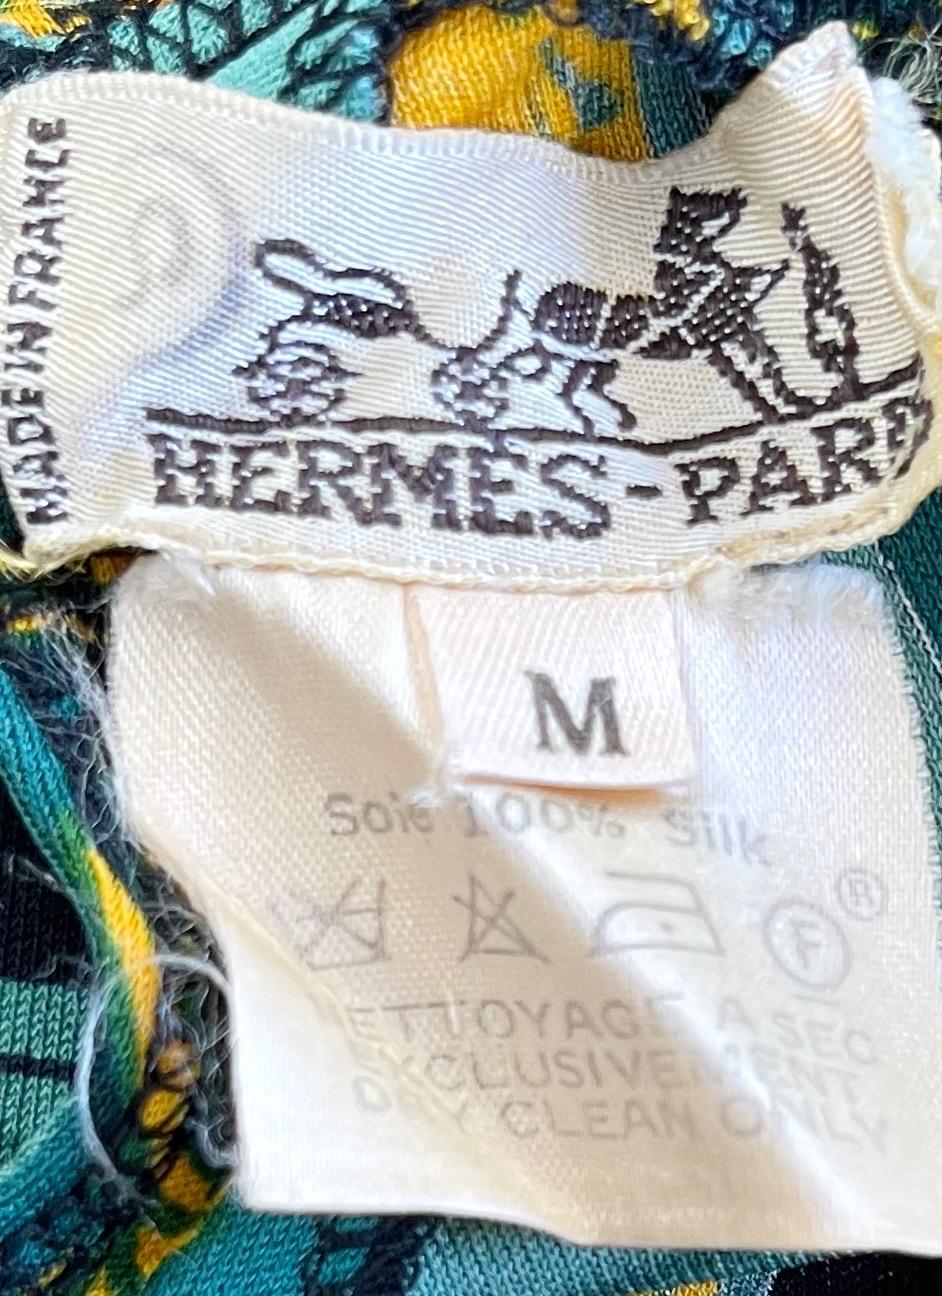 Rare body vintage F/W 96 HERMÈS en jersey de soie ! L'artiste Hugo Grygkar a conçu cette estampe et l'a baptisée 